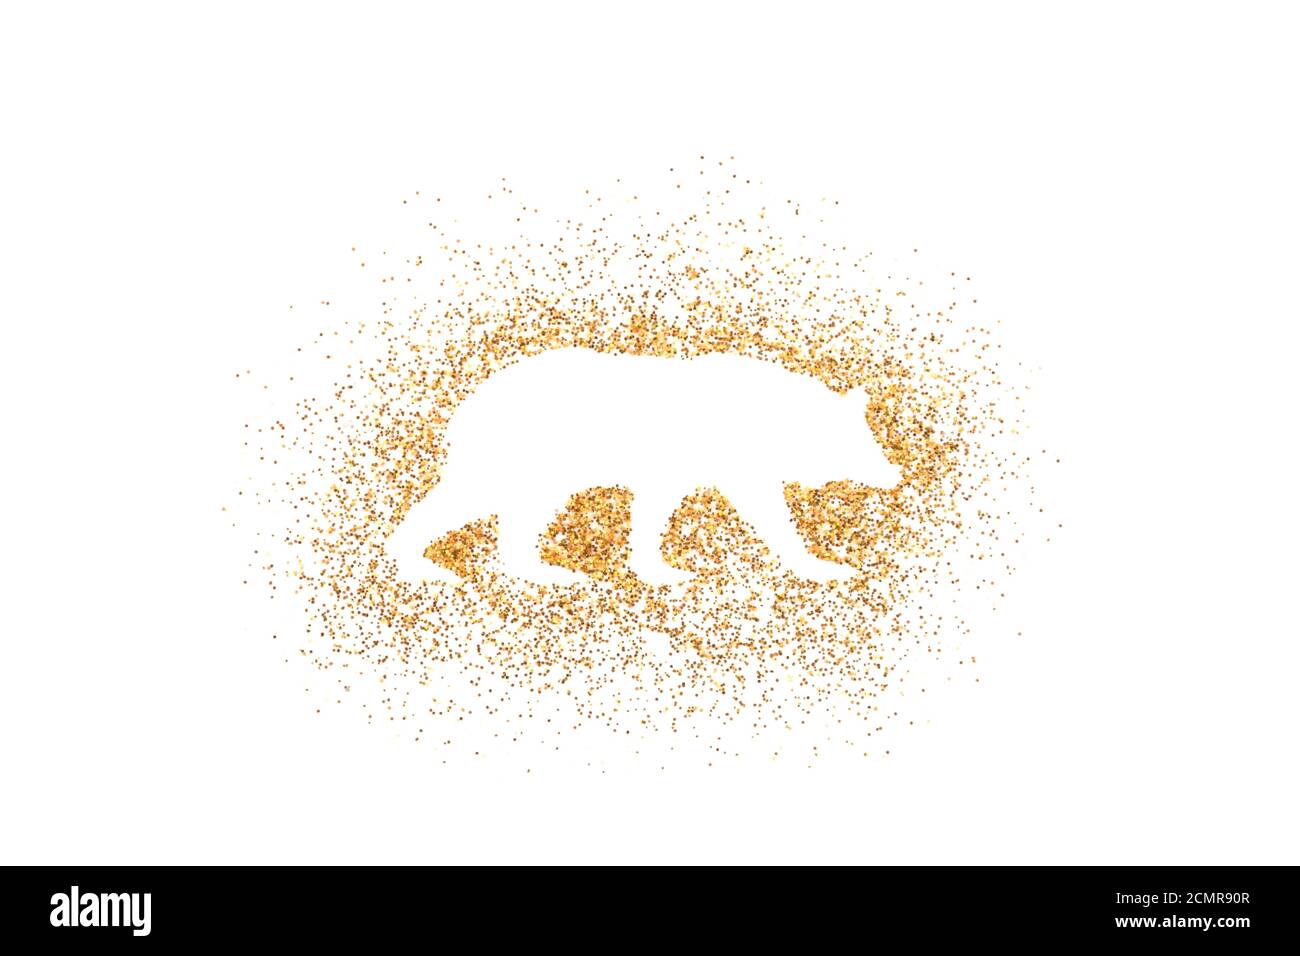 Bear shape on golden glitter over white background Stock Photo